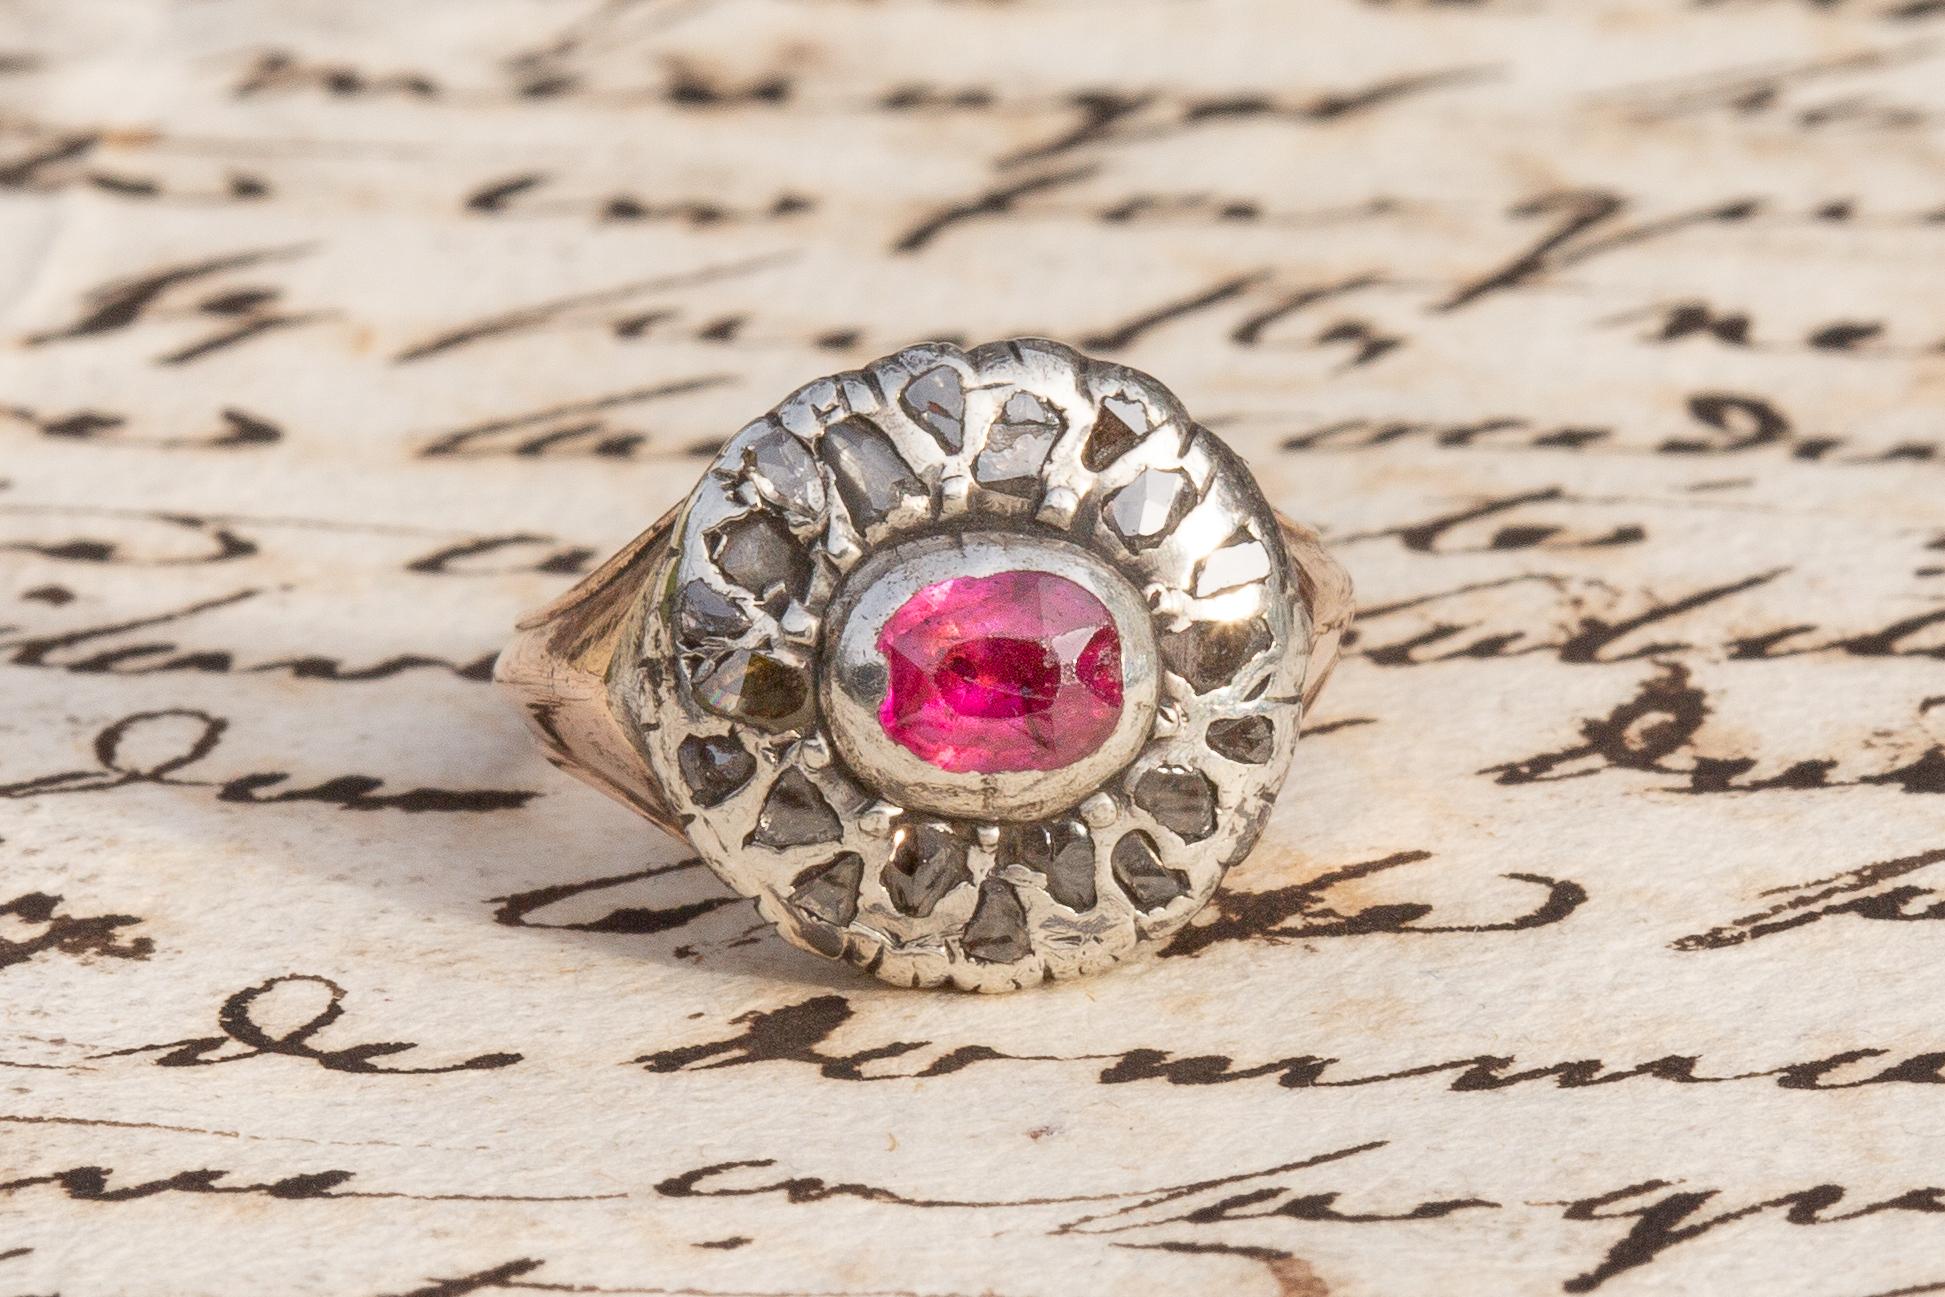 Dieser ungewöhnliche, antike, florale Rubin- und Diamantring aus der georgianischen Ära um 1800 wurde wahrscheinlich in Italien hergestellt. In der Mitte des Ringkopfes liegt ein mit einer Spannzange gefasster und mit Folie hinterlegter hellrosa